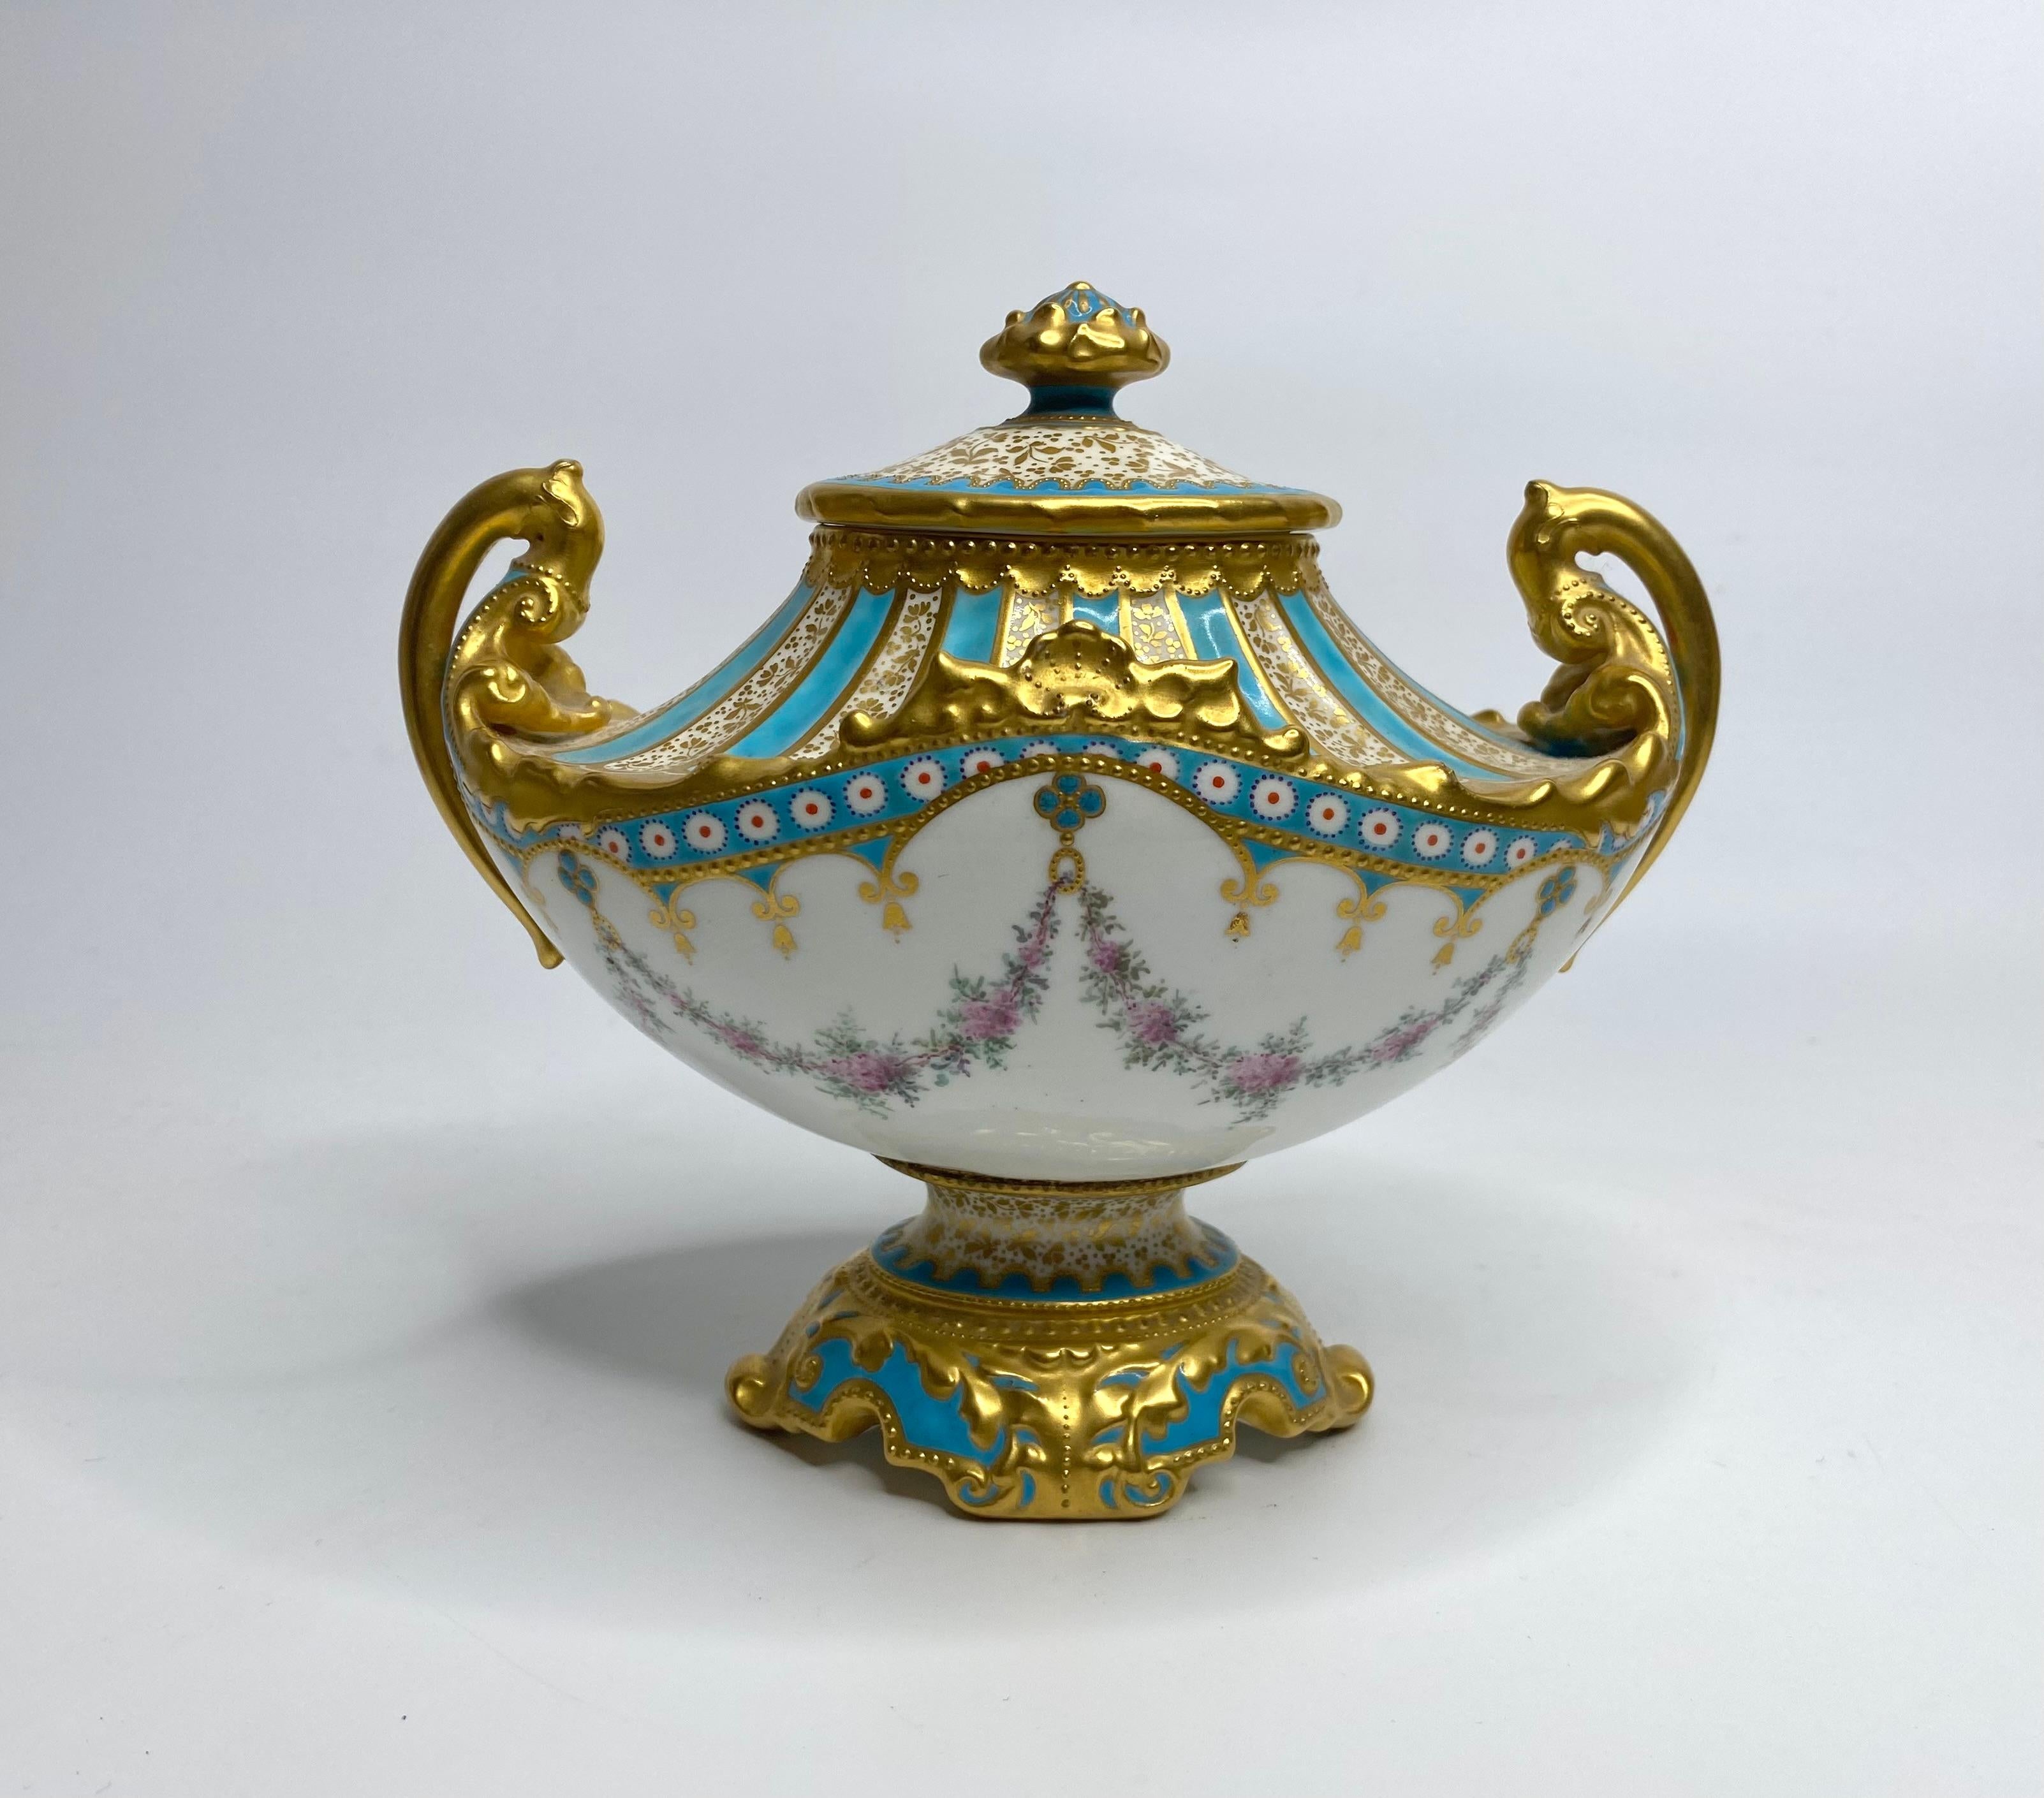 Royal Crown Derby Porzellanvase und Deckel, gemalt von Desire LeRoy, datiert 1897. Vase mit zwei Henkeln im Sèvres-Stil, handbemalt mit Blumenranken, die an einer Vase mit Blumen hängen, die durch blaue Blumenfelder unterteilt sind. 
Die Schulter